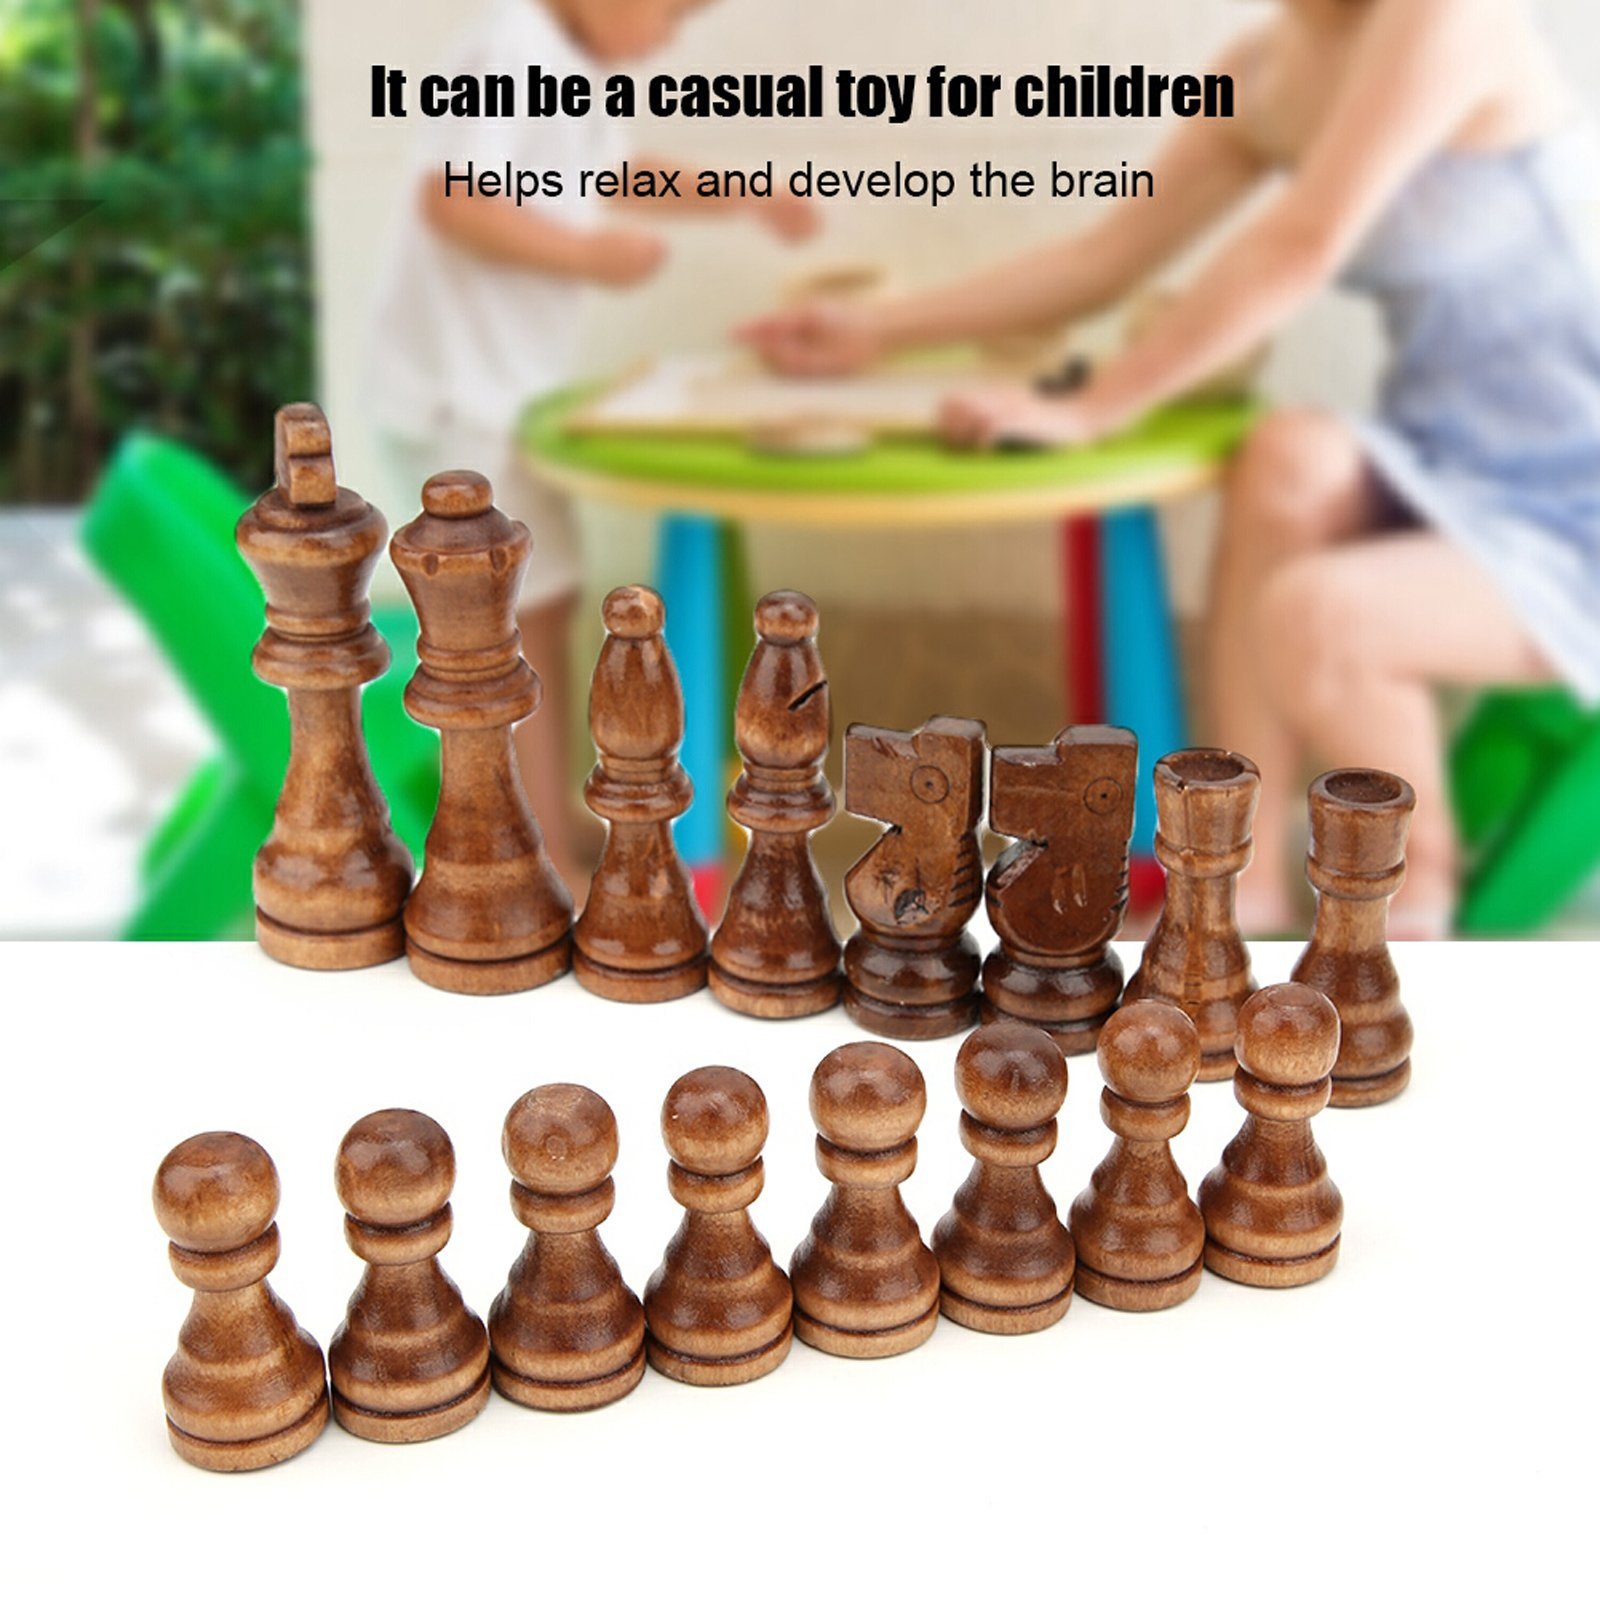 Schach, mit 32 Teilen, Holz. Spielzeug - Spielzeug - Auctionet